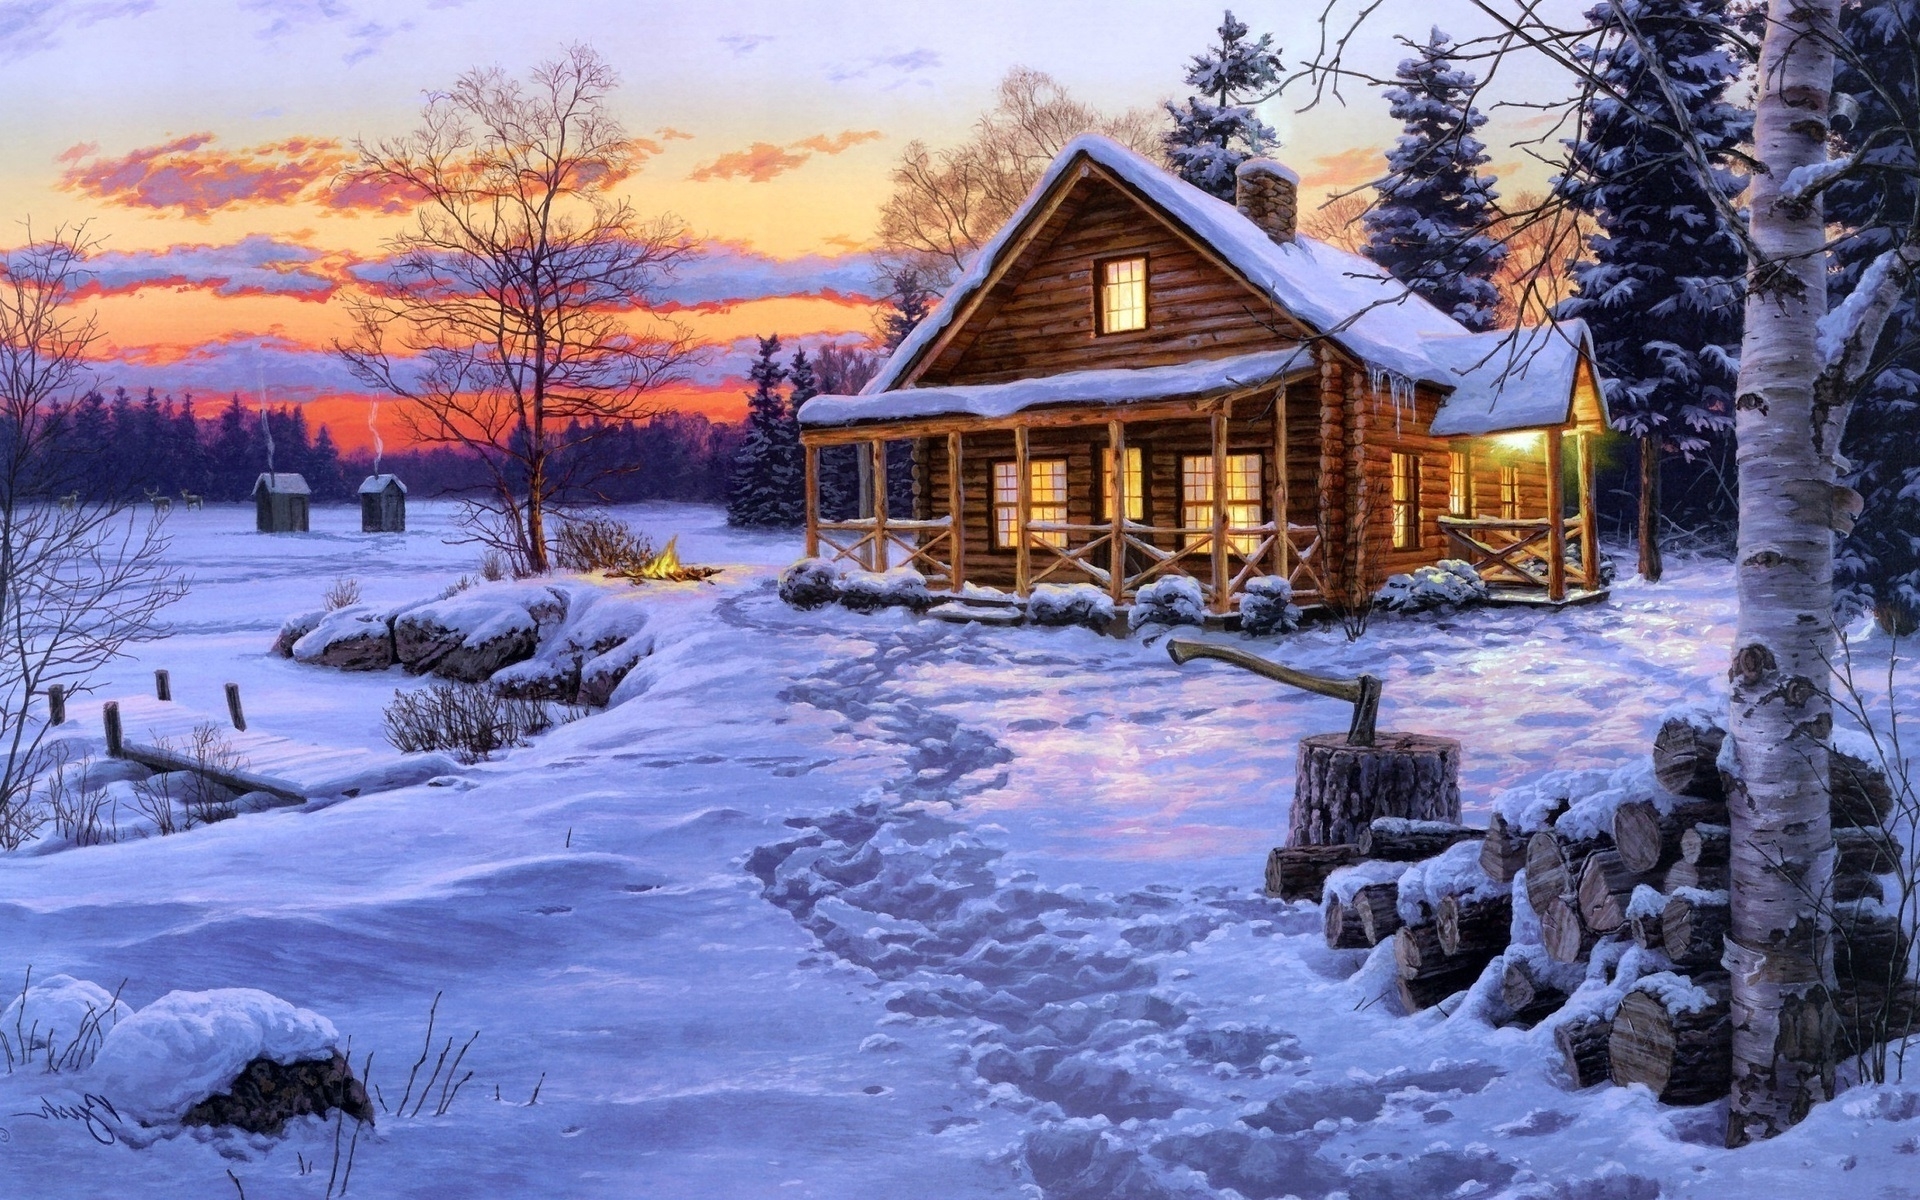 papel pintado de la cabaña de troncos,invierno,nieve,casa,cielo,paisaje natural